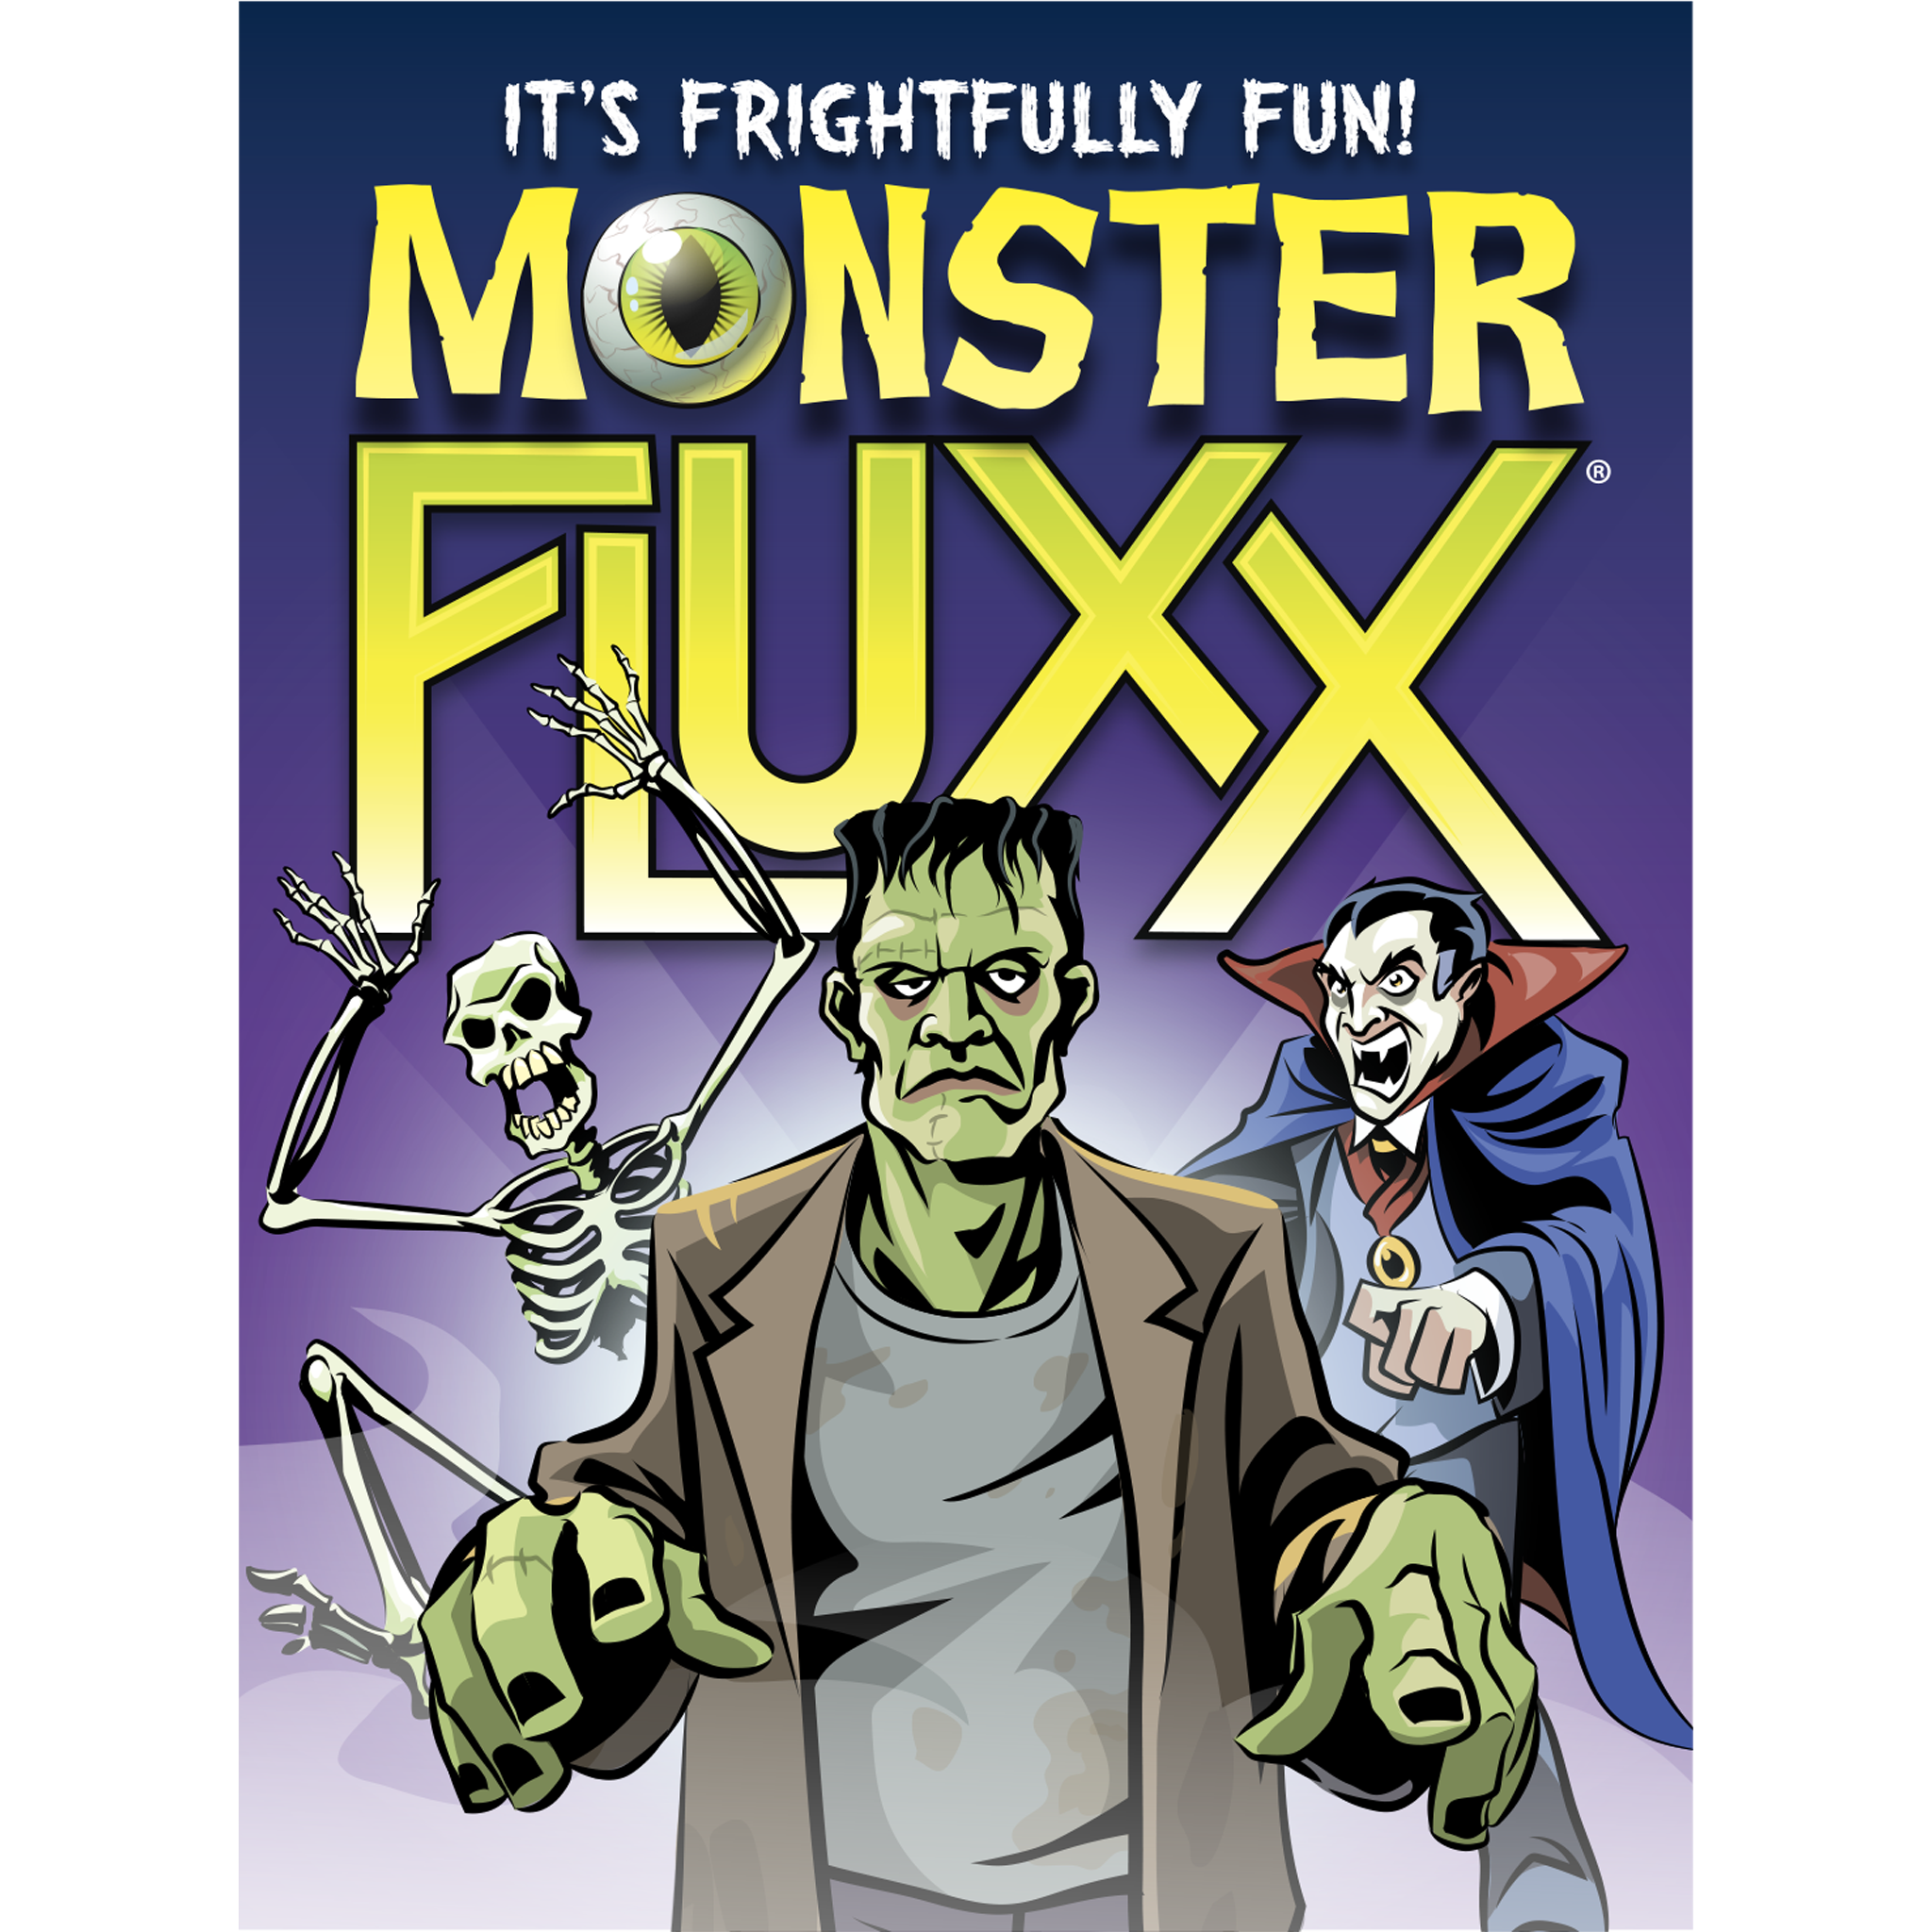 Monster Fluxx flat cover